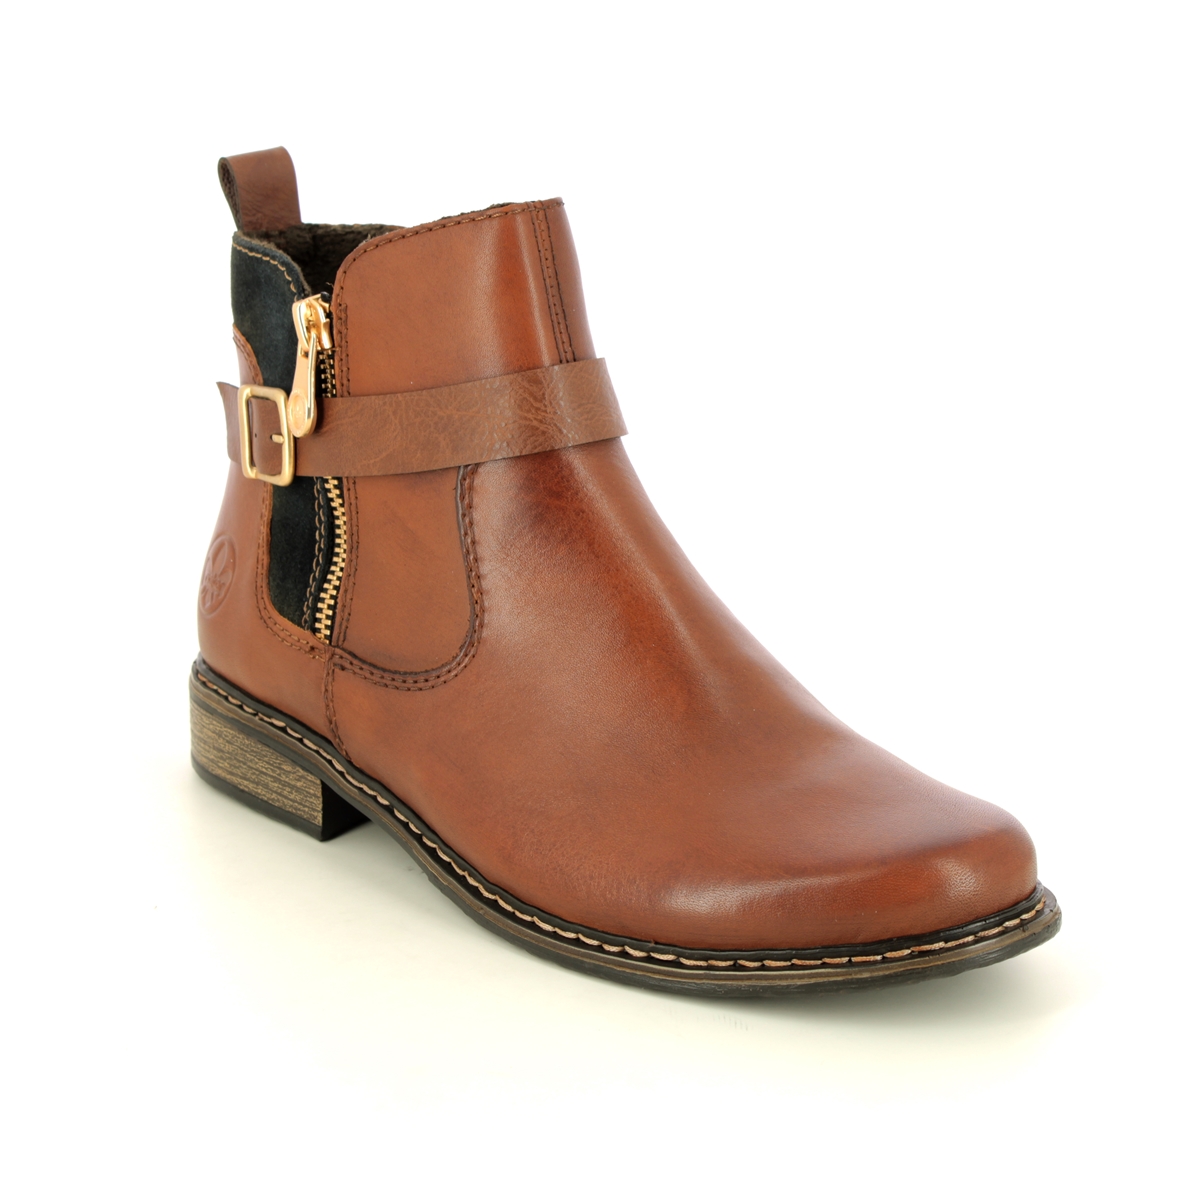 Rieker Peechez Tan Leather Womens Chelsea Boots Z4959-22 In Size 38 In Plain Tan Leather